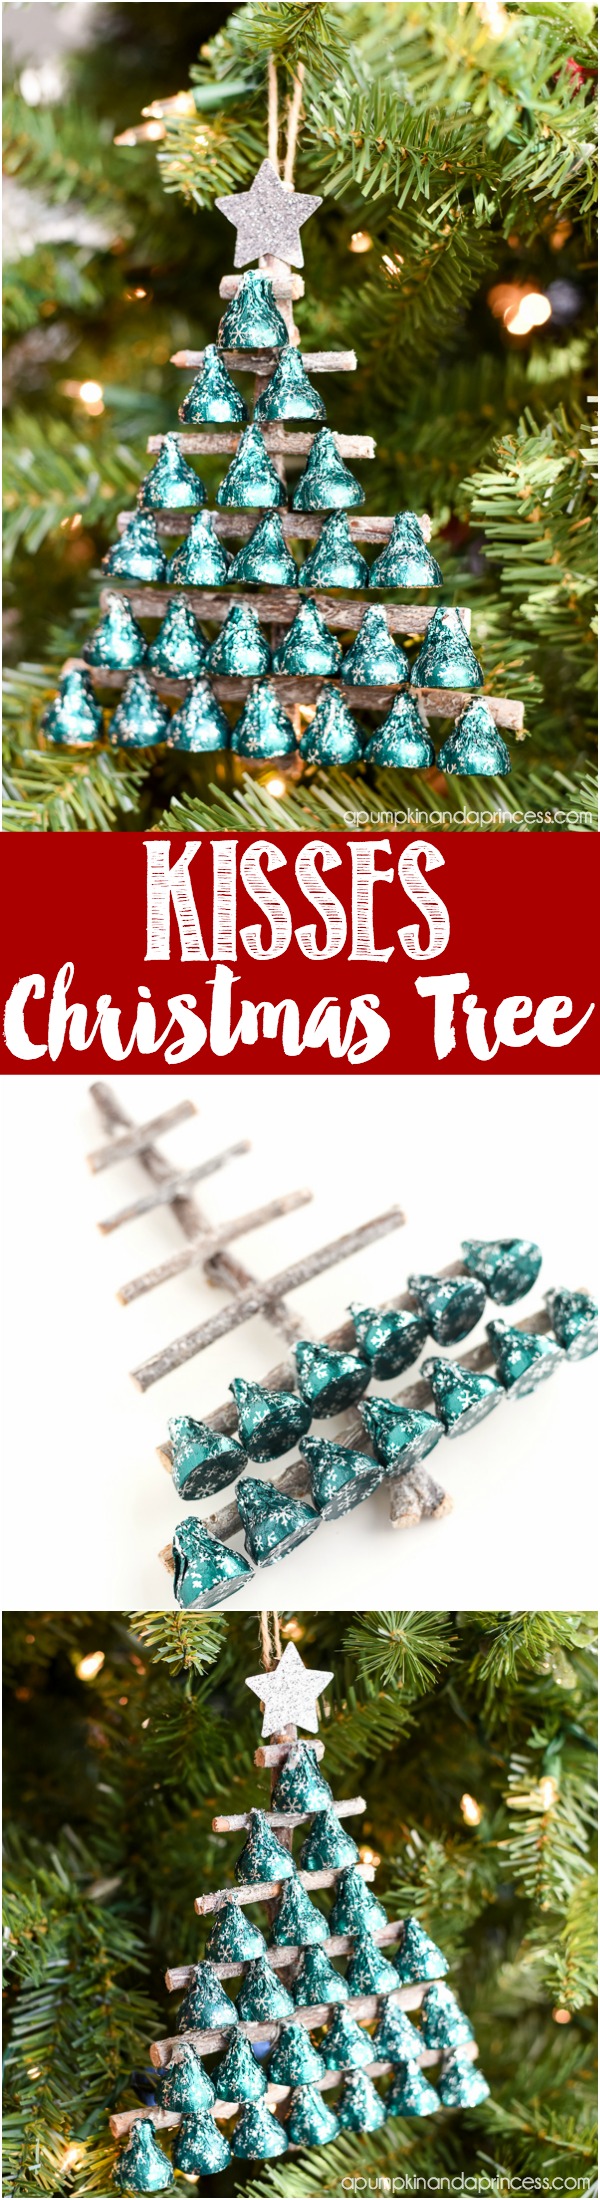 Árbol de Navidad de Hershey's KISSES